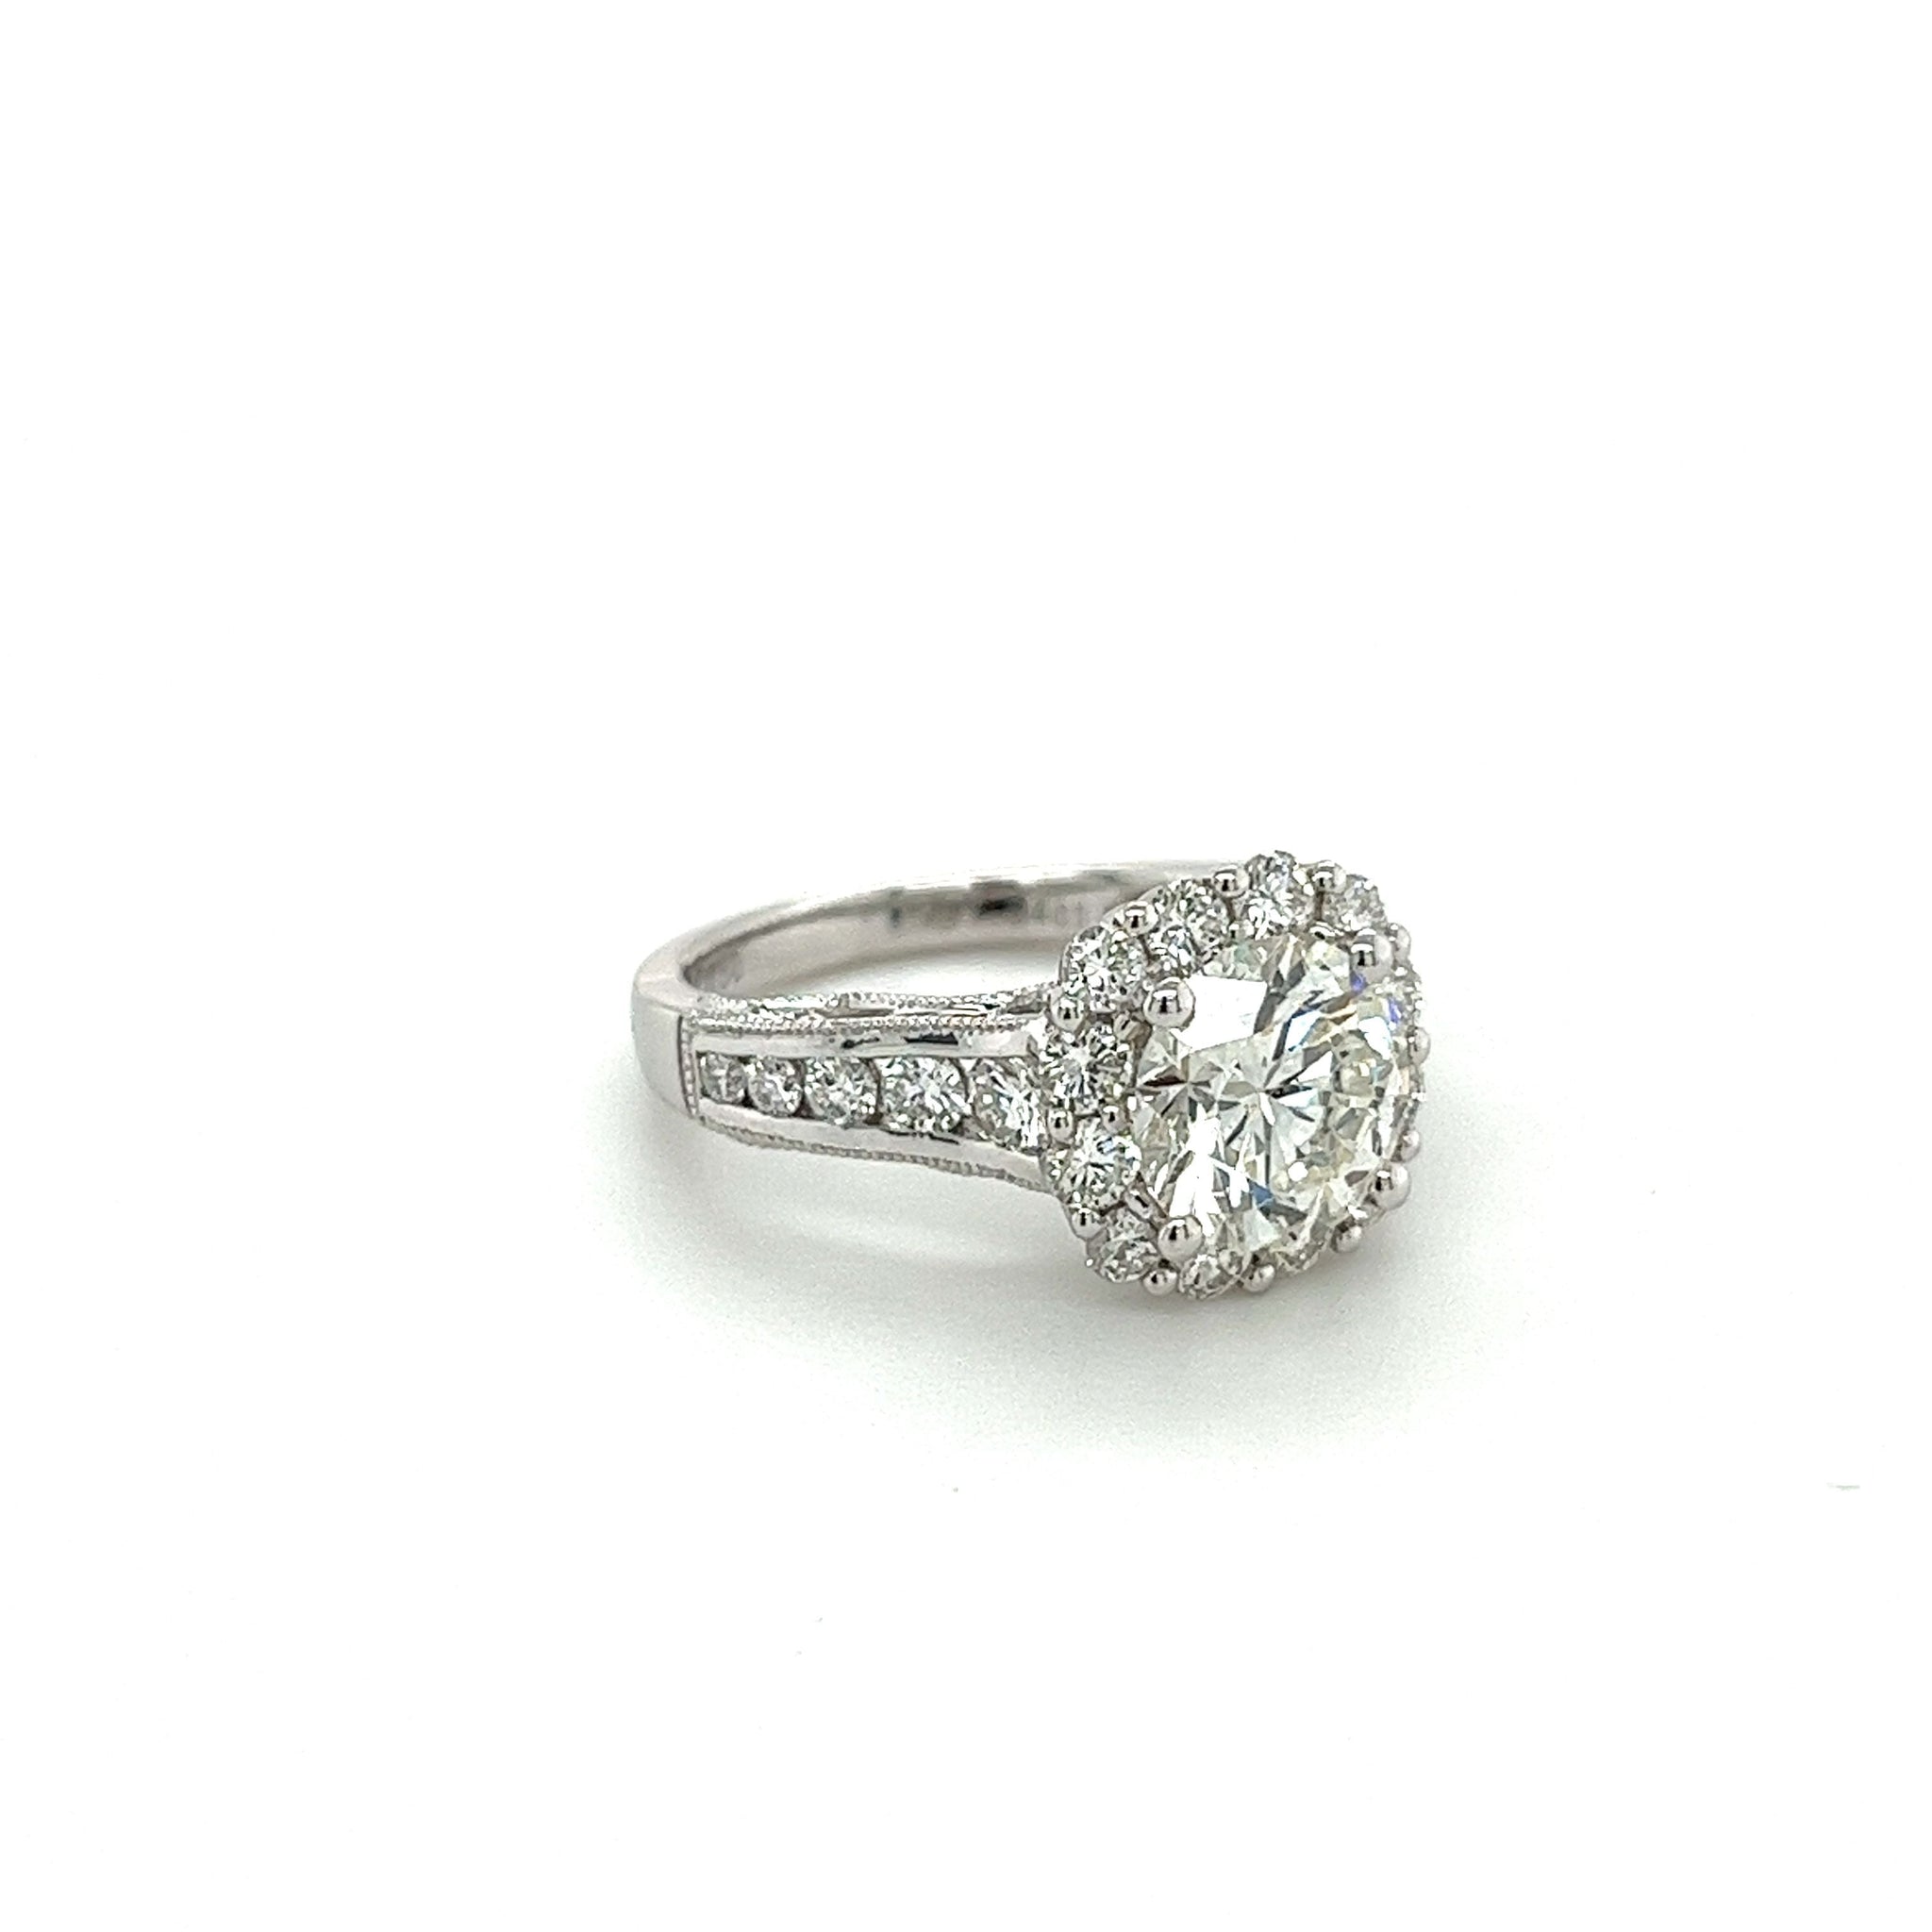 2.16 Carat Natural Round Diamond Ring & Diamond Halo with Diamond Side Stones-Diamond Ring-ASSAY